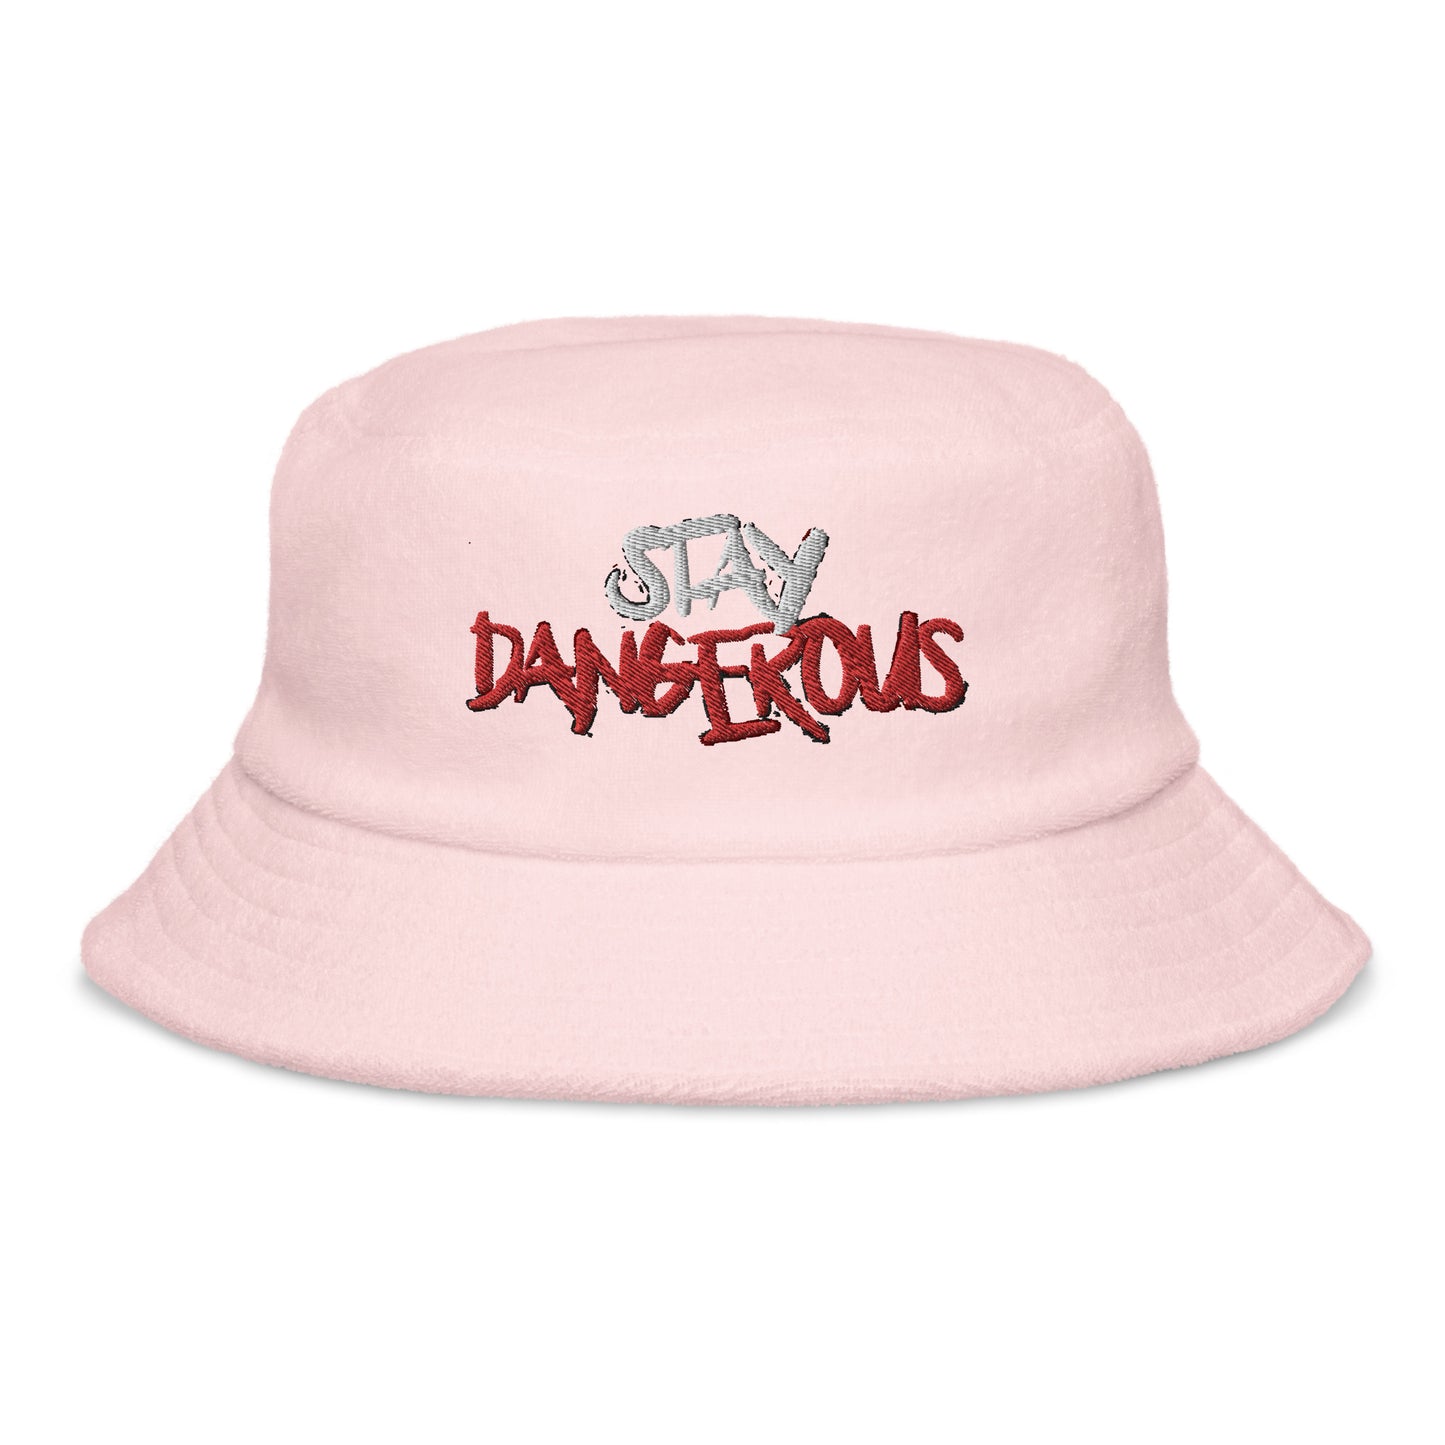 Stay Dangerous Bucket Hat